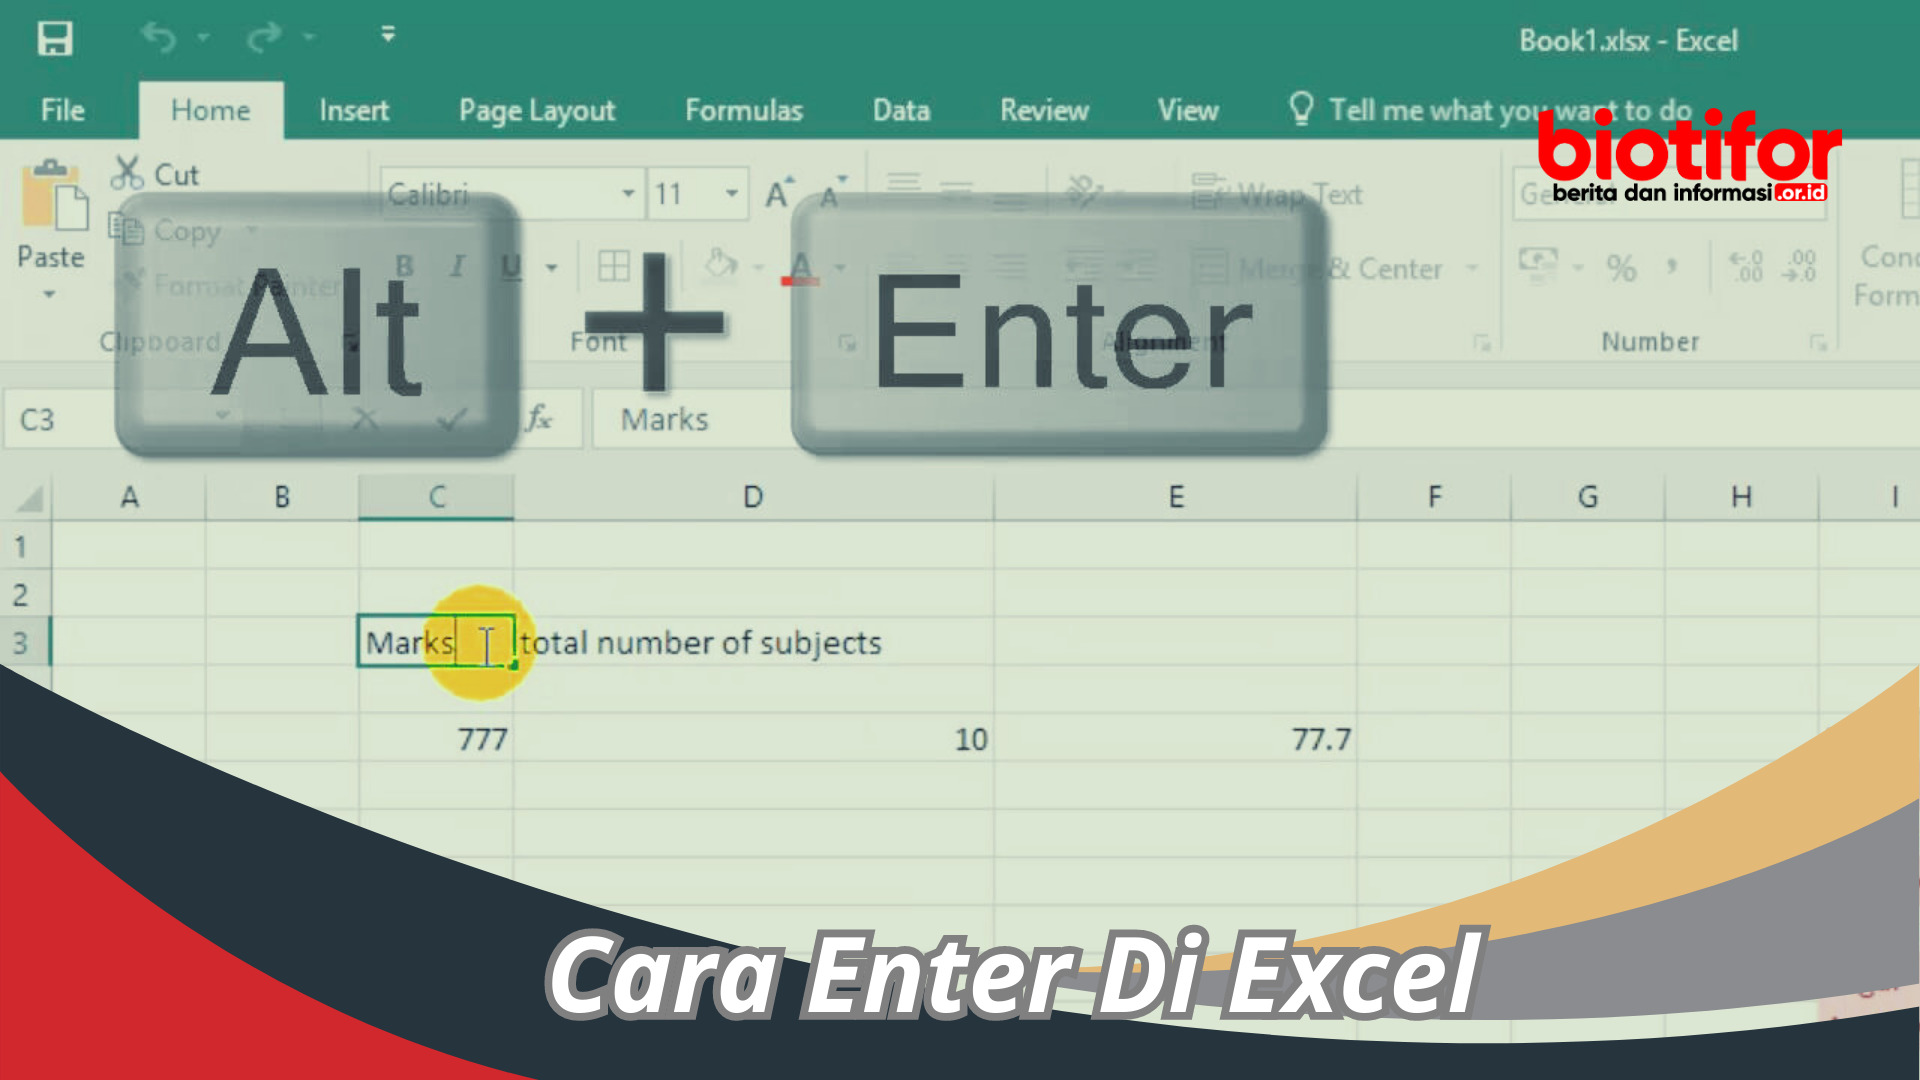 Cara Enter Di Excel